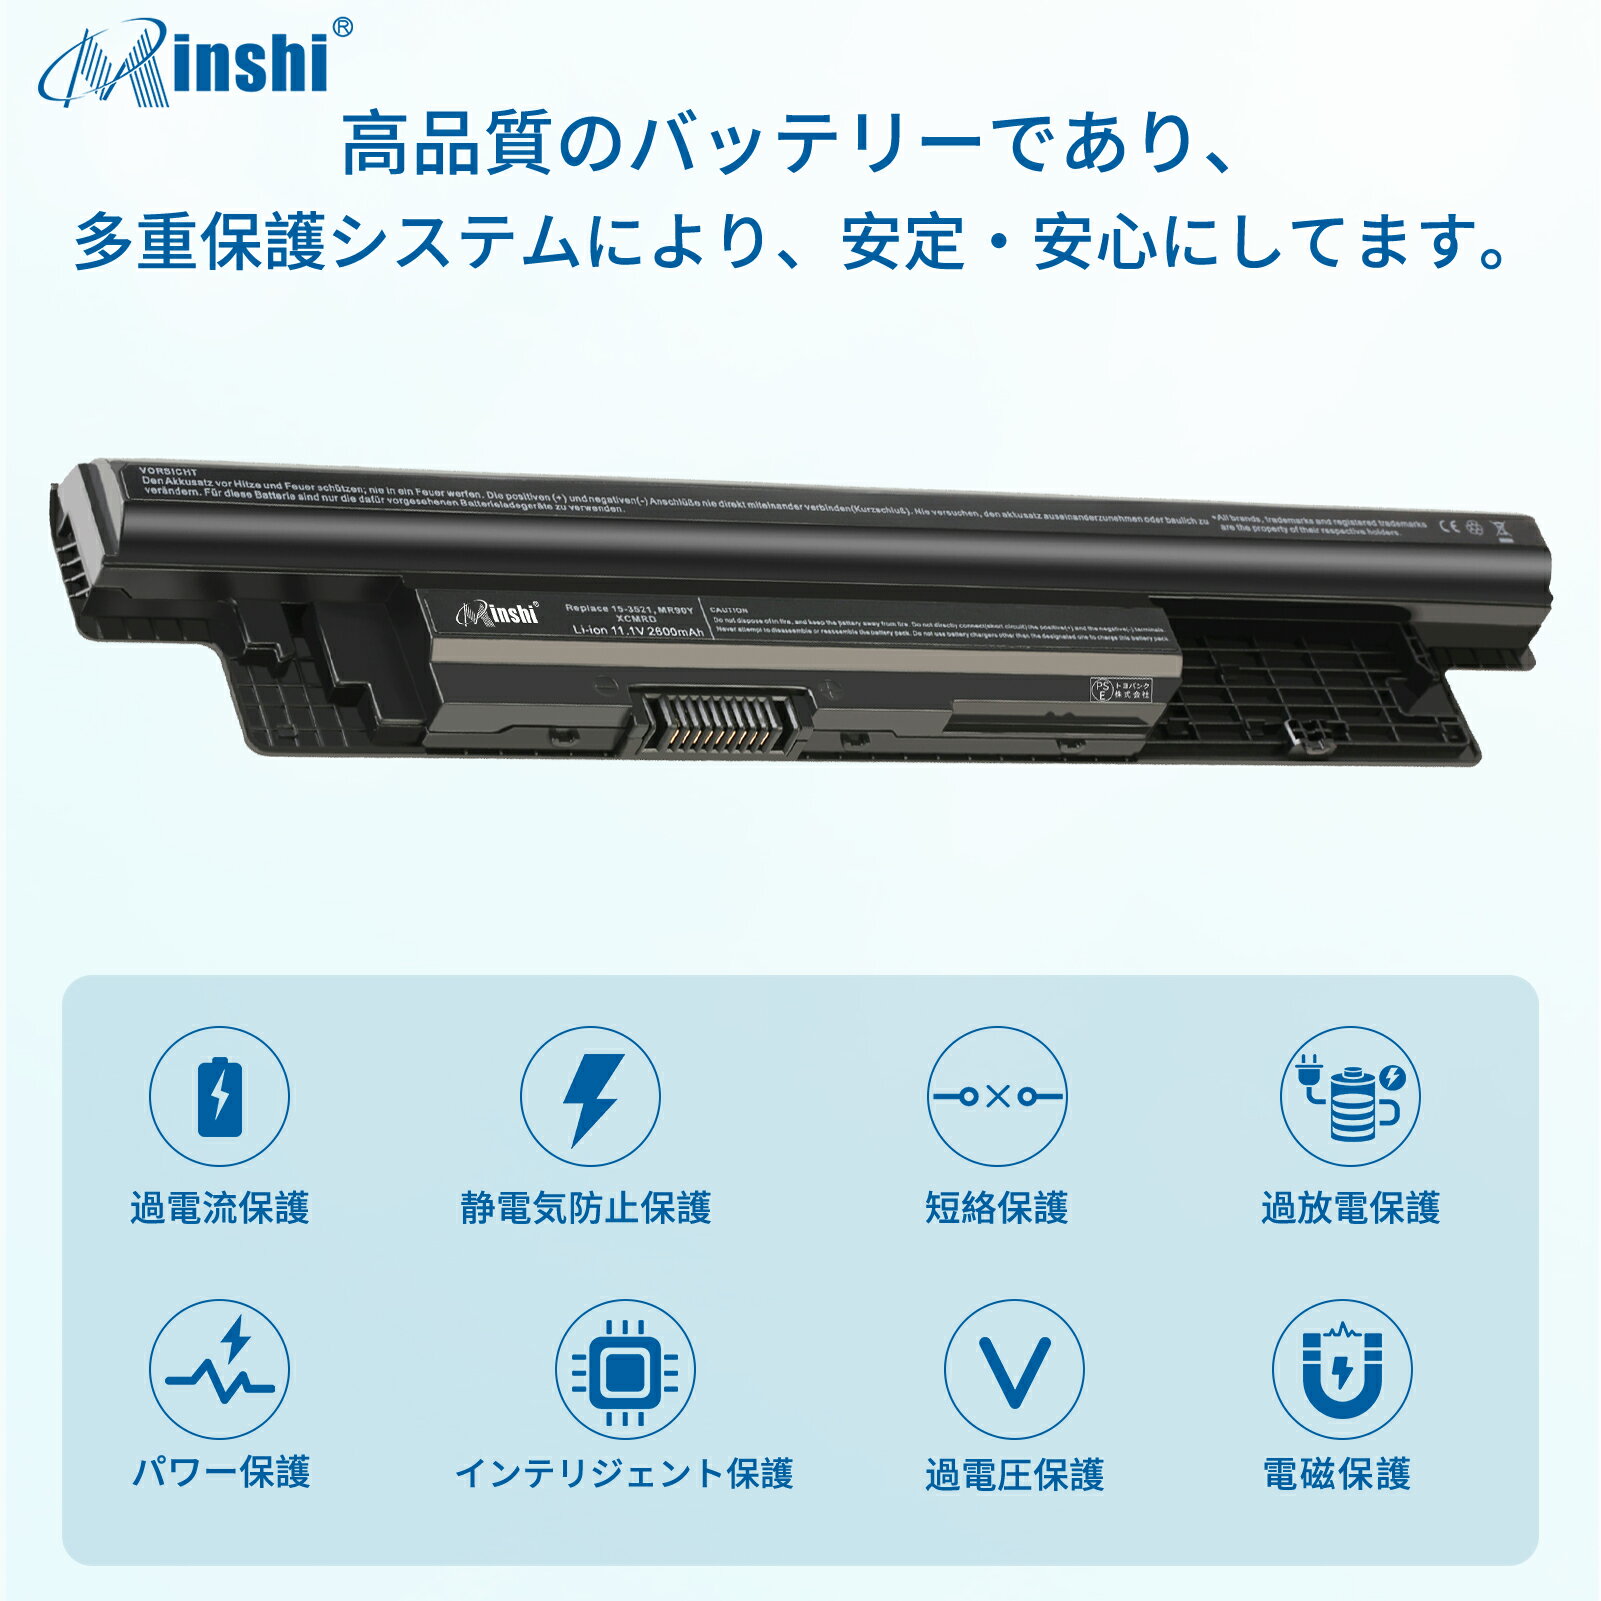 minshi 新品 Dell 312-1390 互換バッテリー 対応 高品質交換用電池パック PSE認証 1年間保証 2600mAh 3